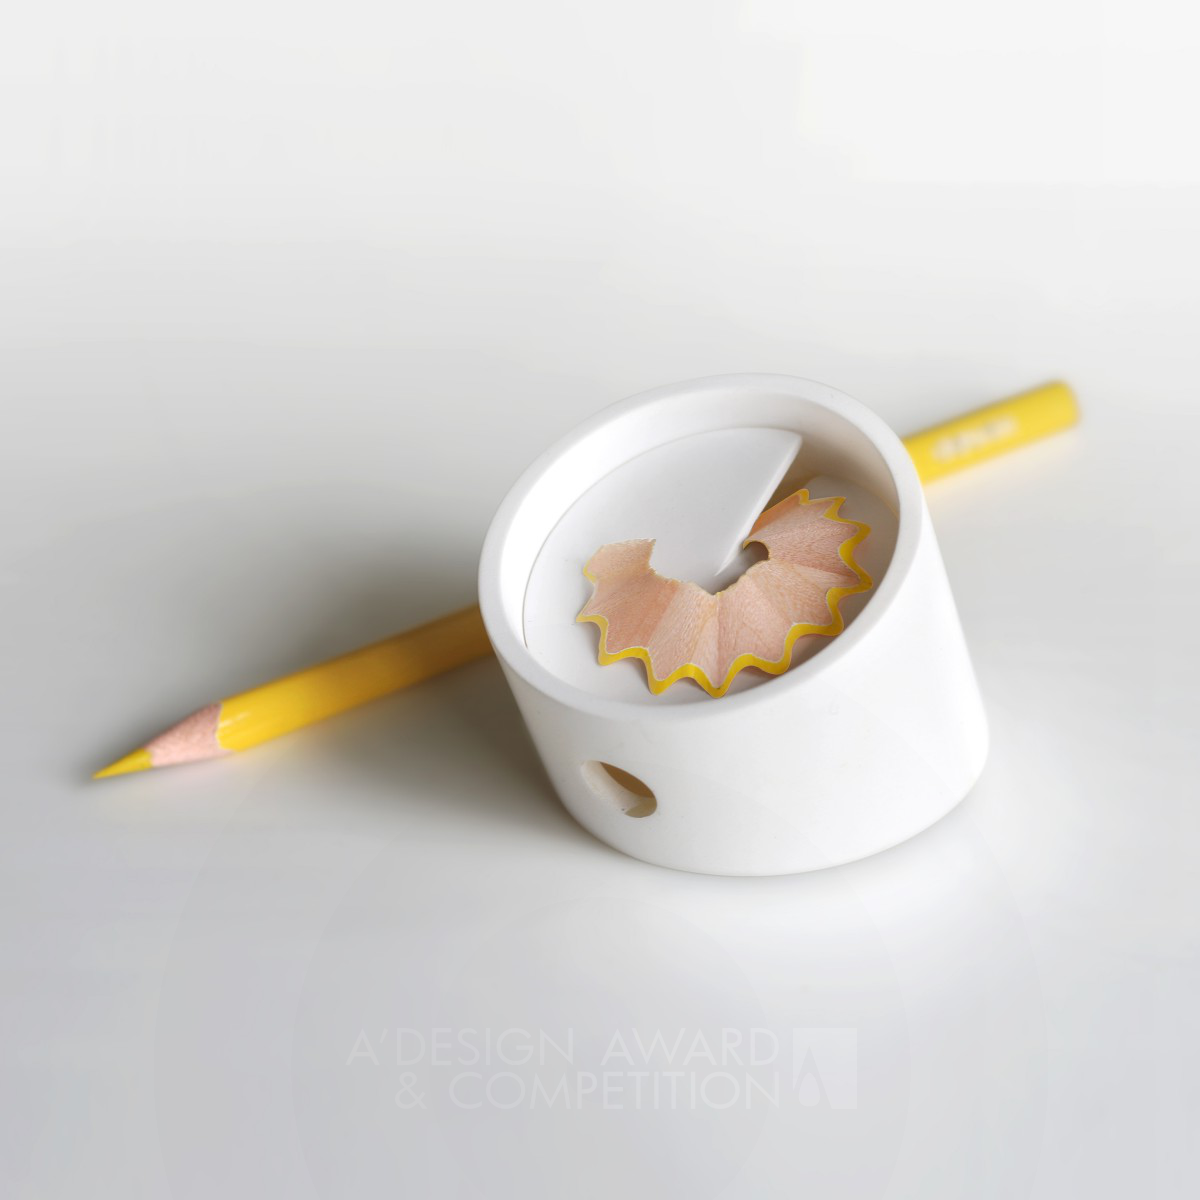 Life Pencil Sharpener by WeiCheng Deng